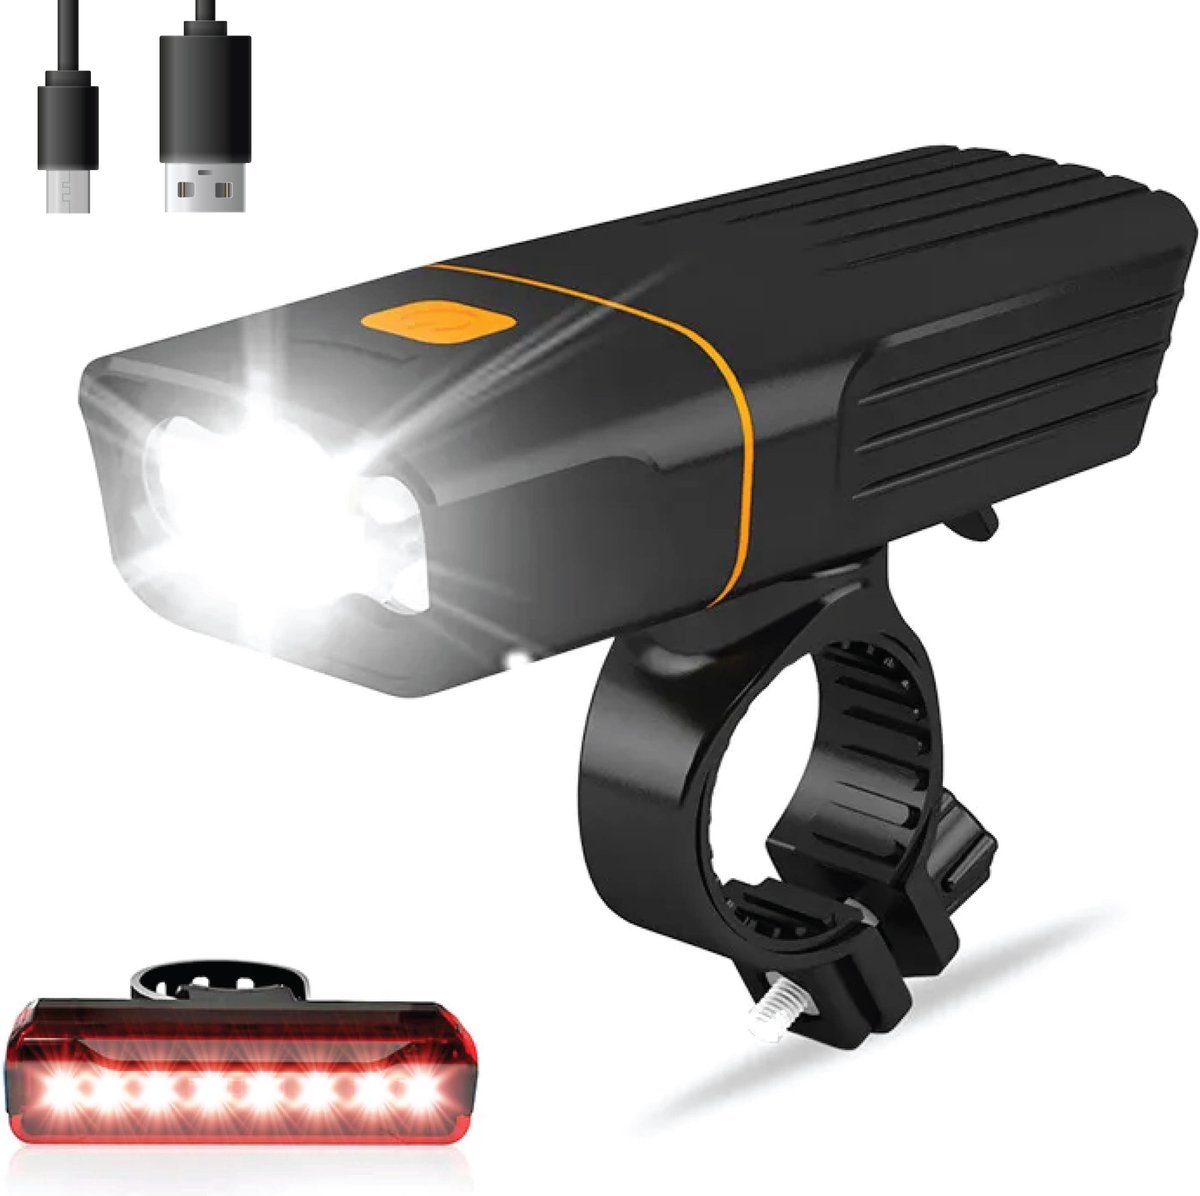 Fietslamp Set – Fietsverlichting – Fietslicht - Voorlicht en Achterlicht – Racefiets Verlichting - Koplamp Fiets – Fietslampen - USB Oplaadbaar – Led – Fiets, Mountainbike en Ebike